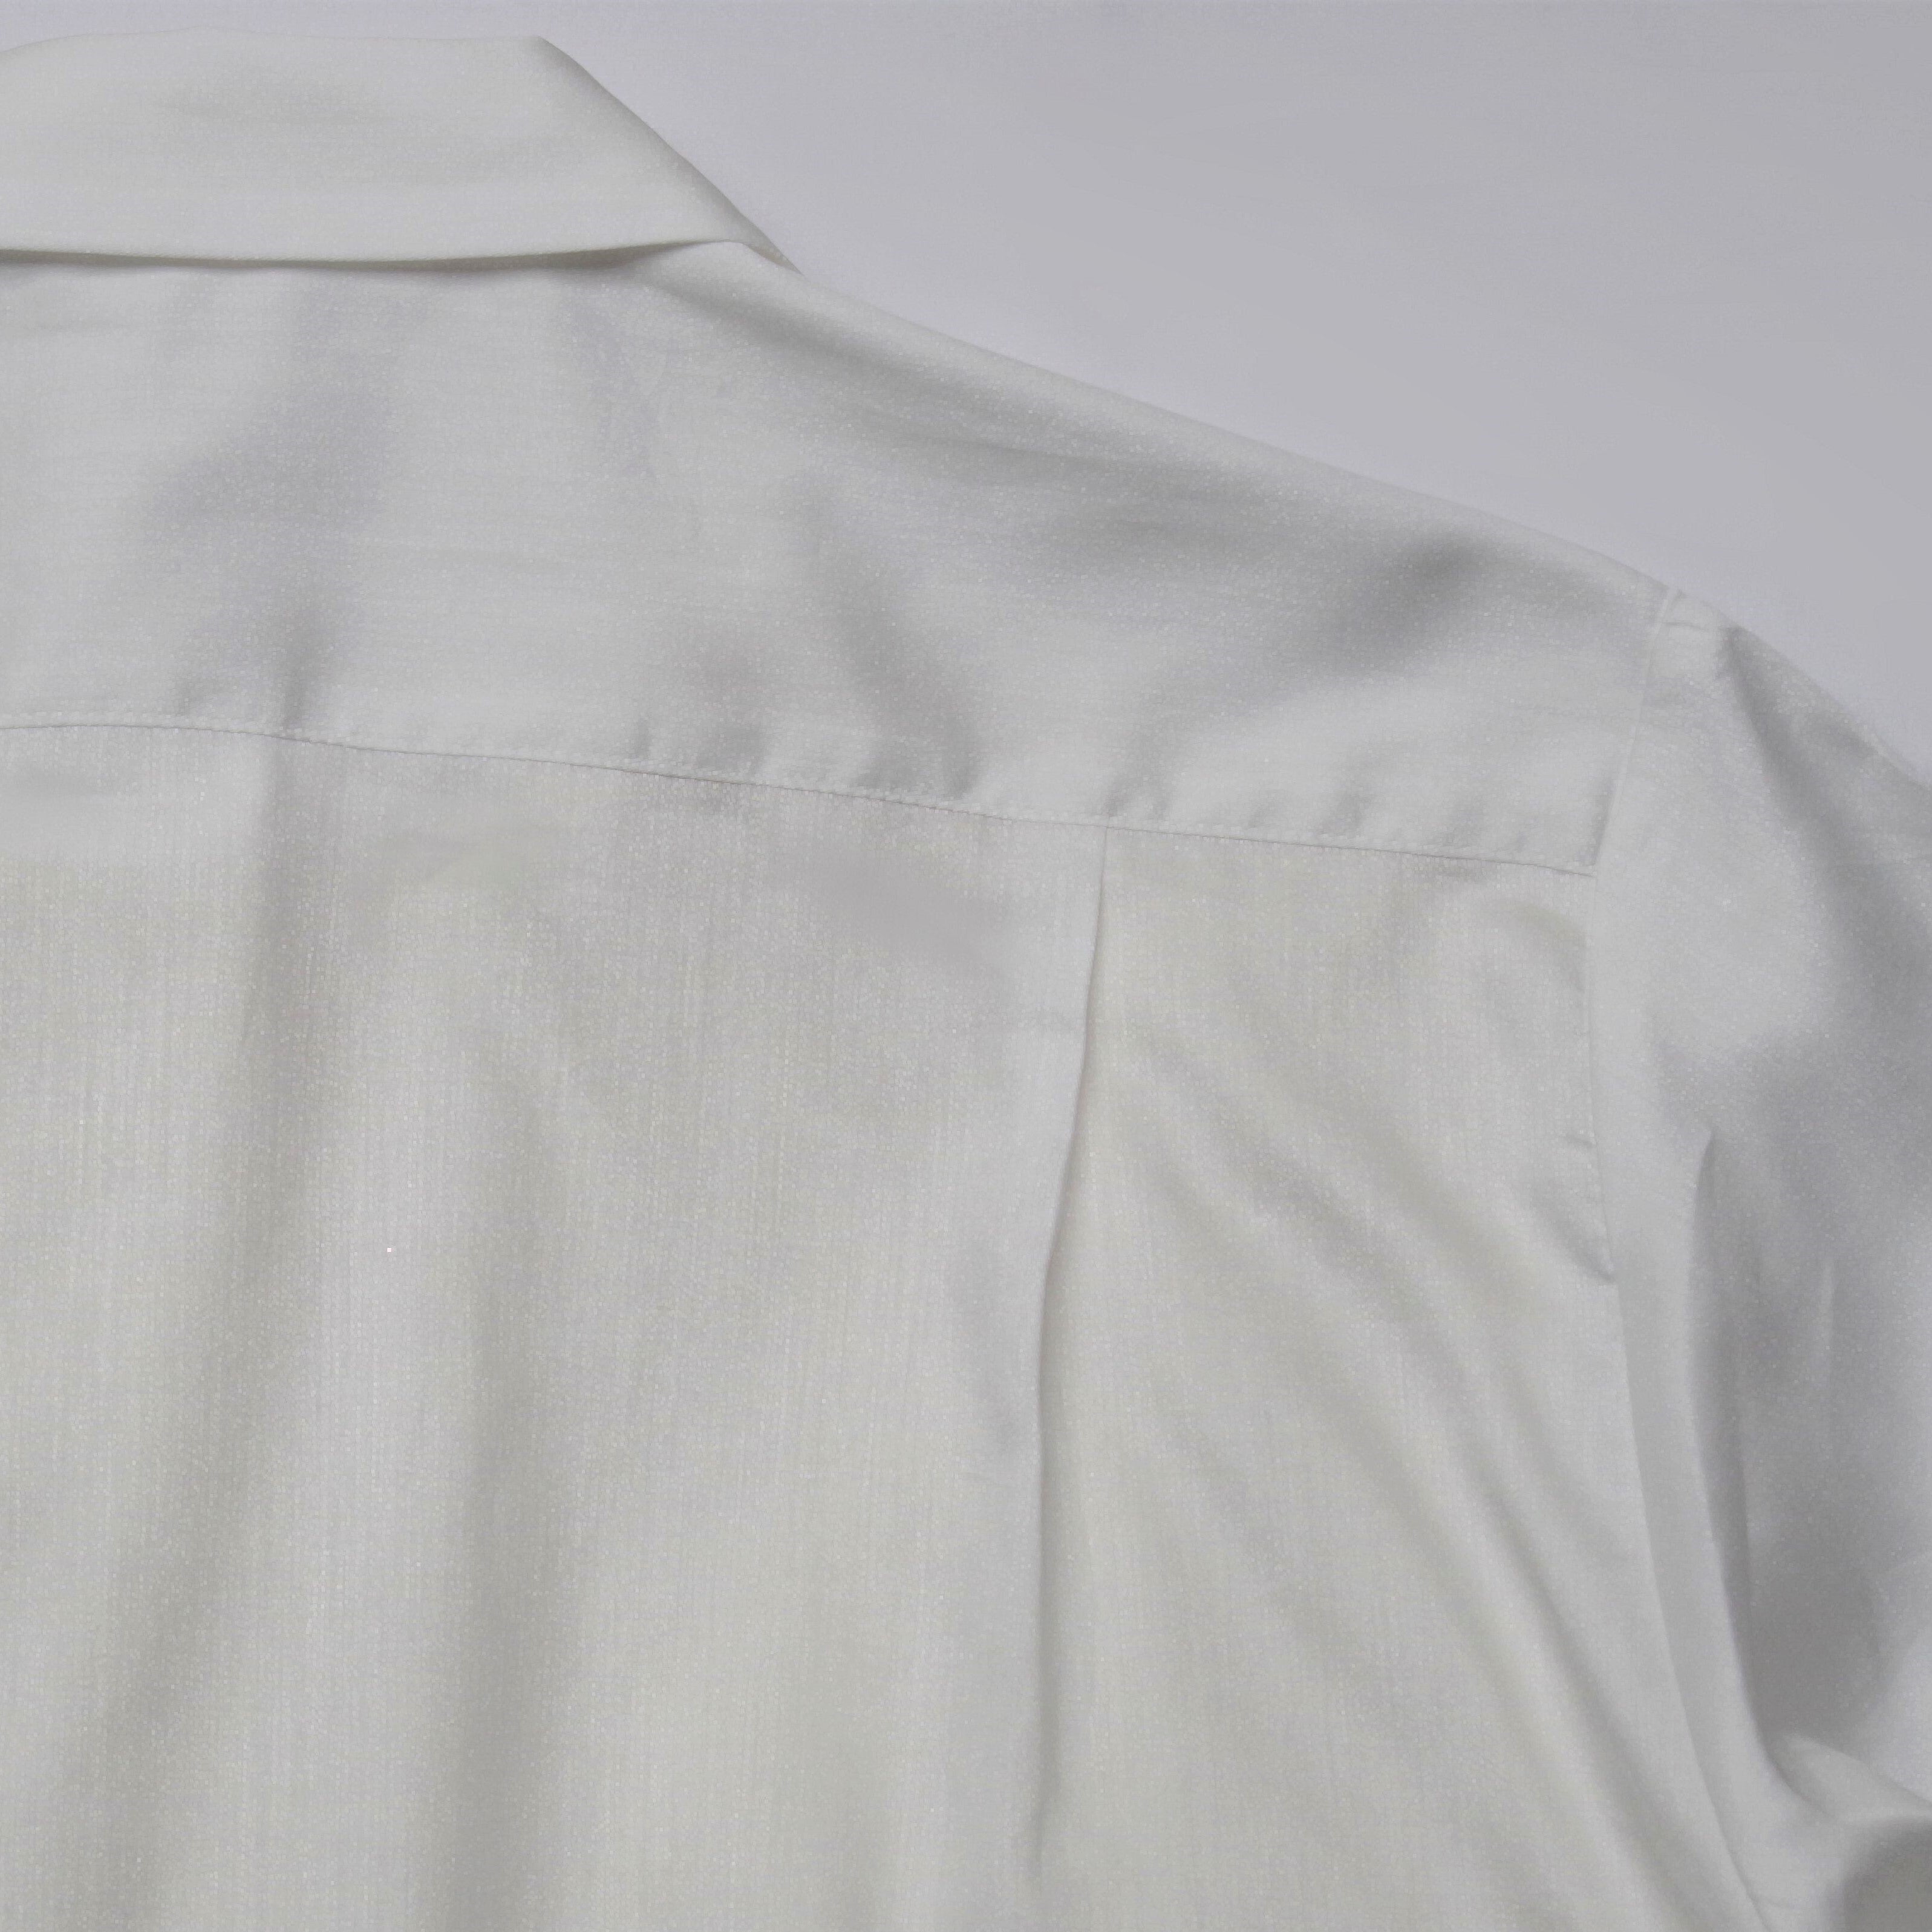 「ずっと頼れる、とっておきの一着」フロント刺繍シャツ ホワイト